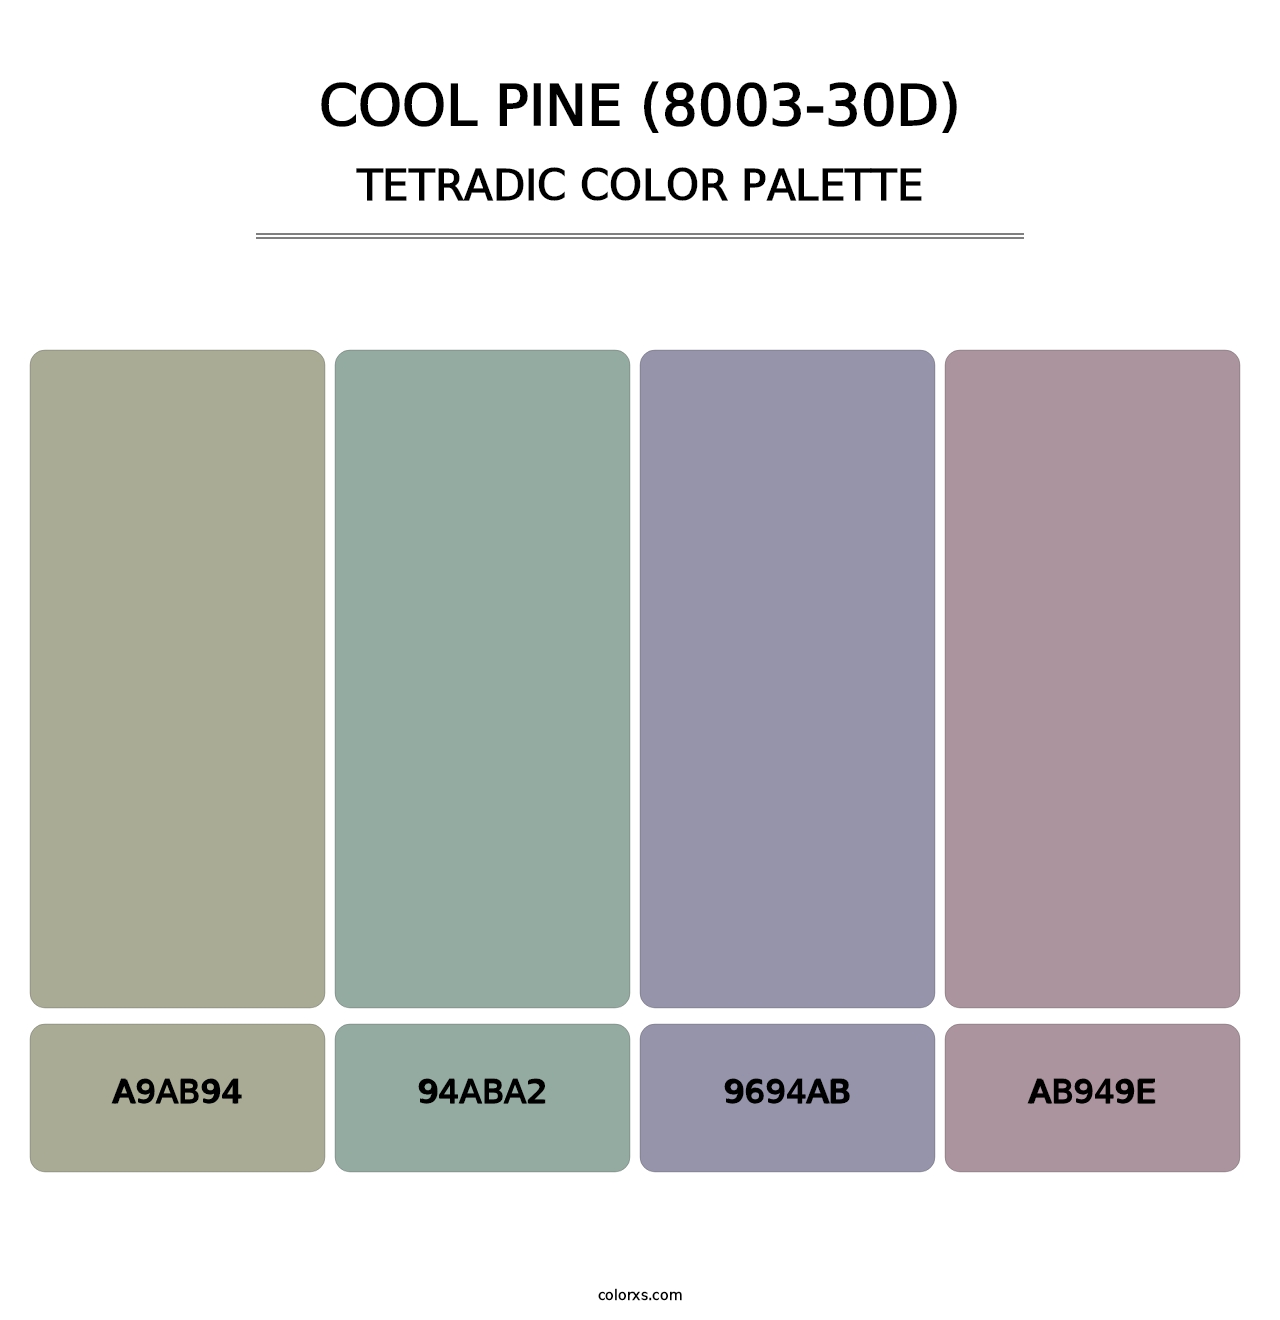 Cool Pine (8003-30D) - Tetradic Color Palette